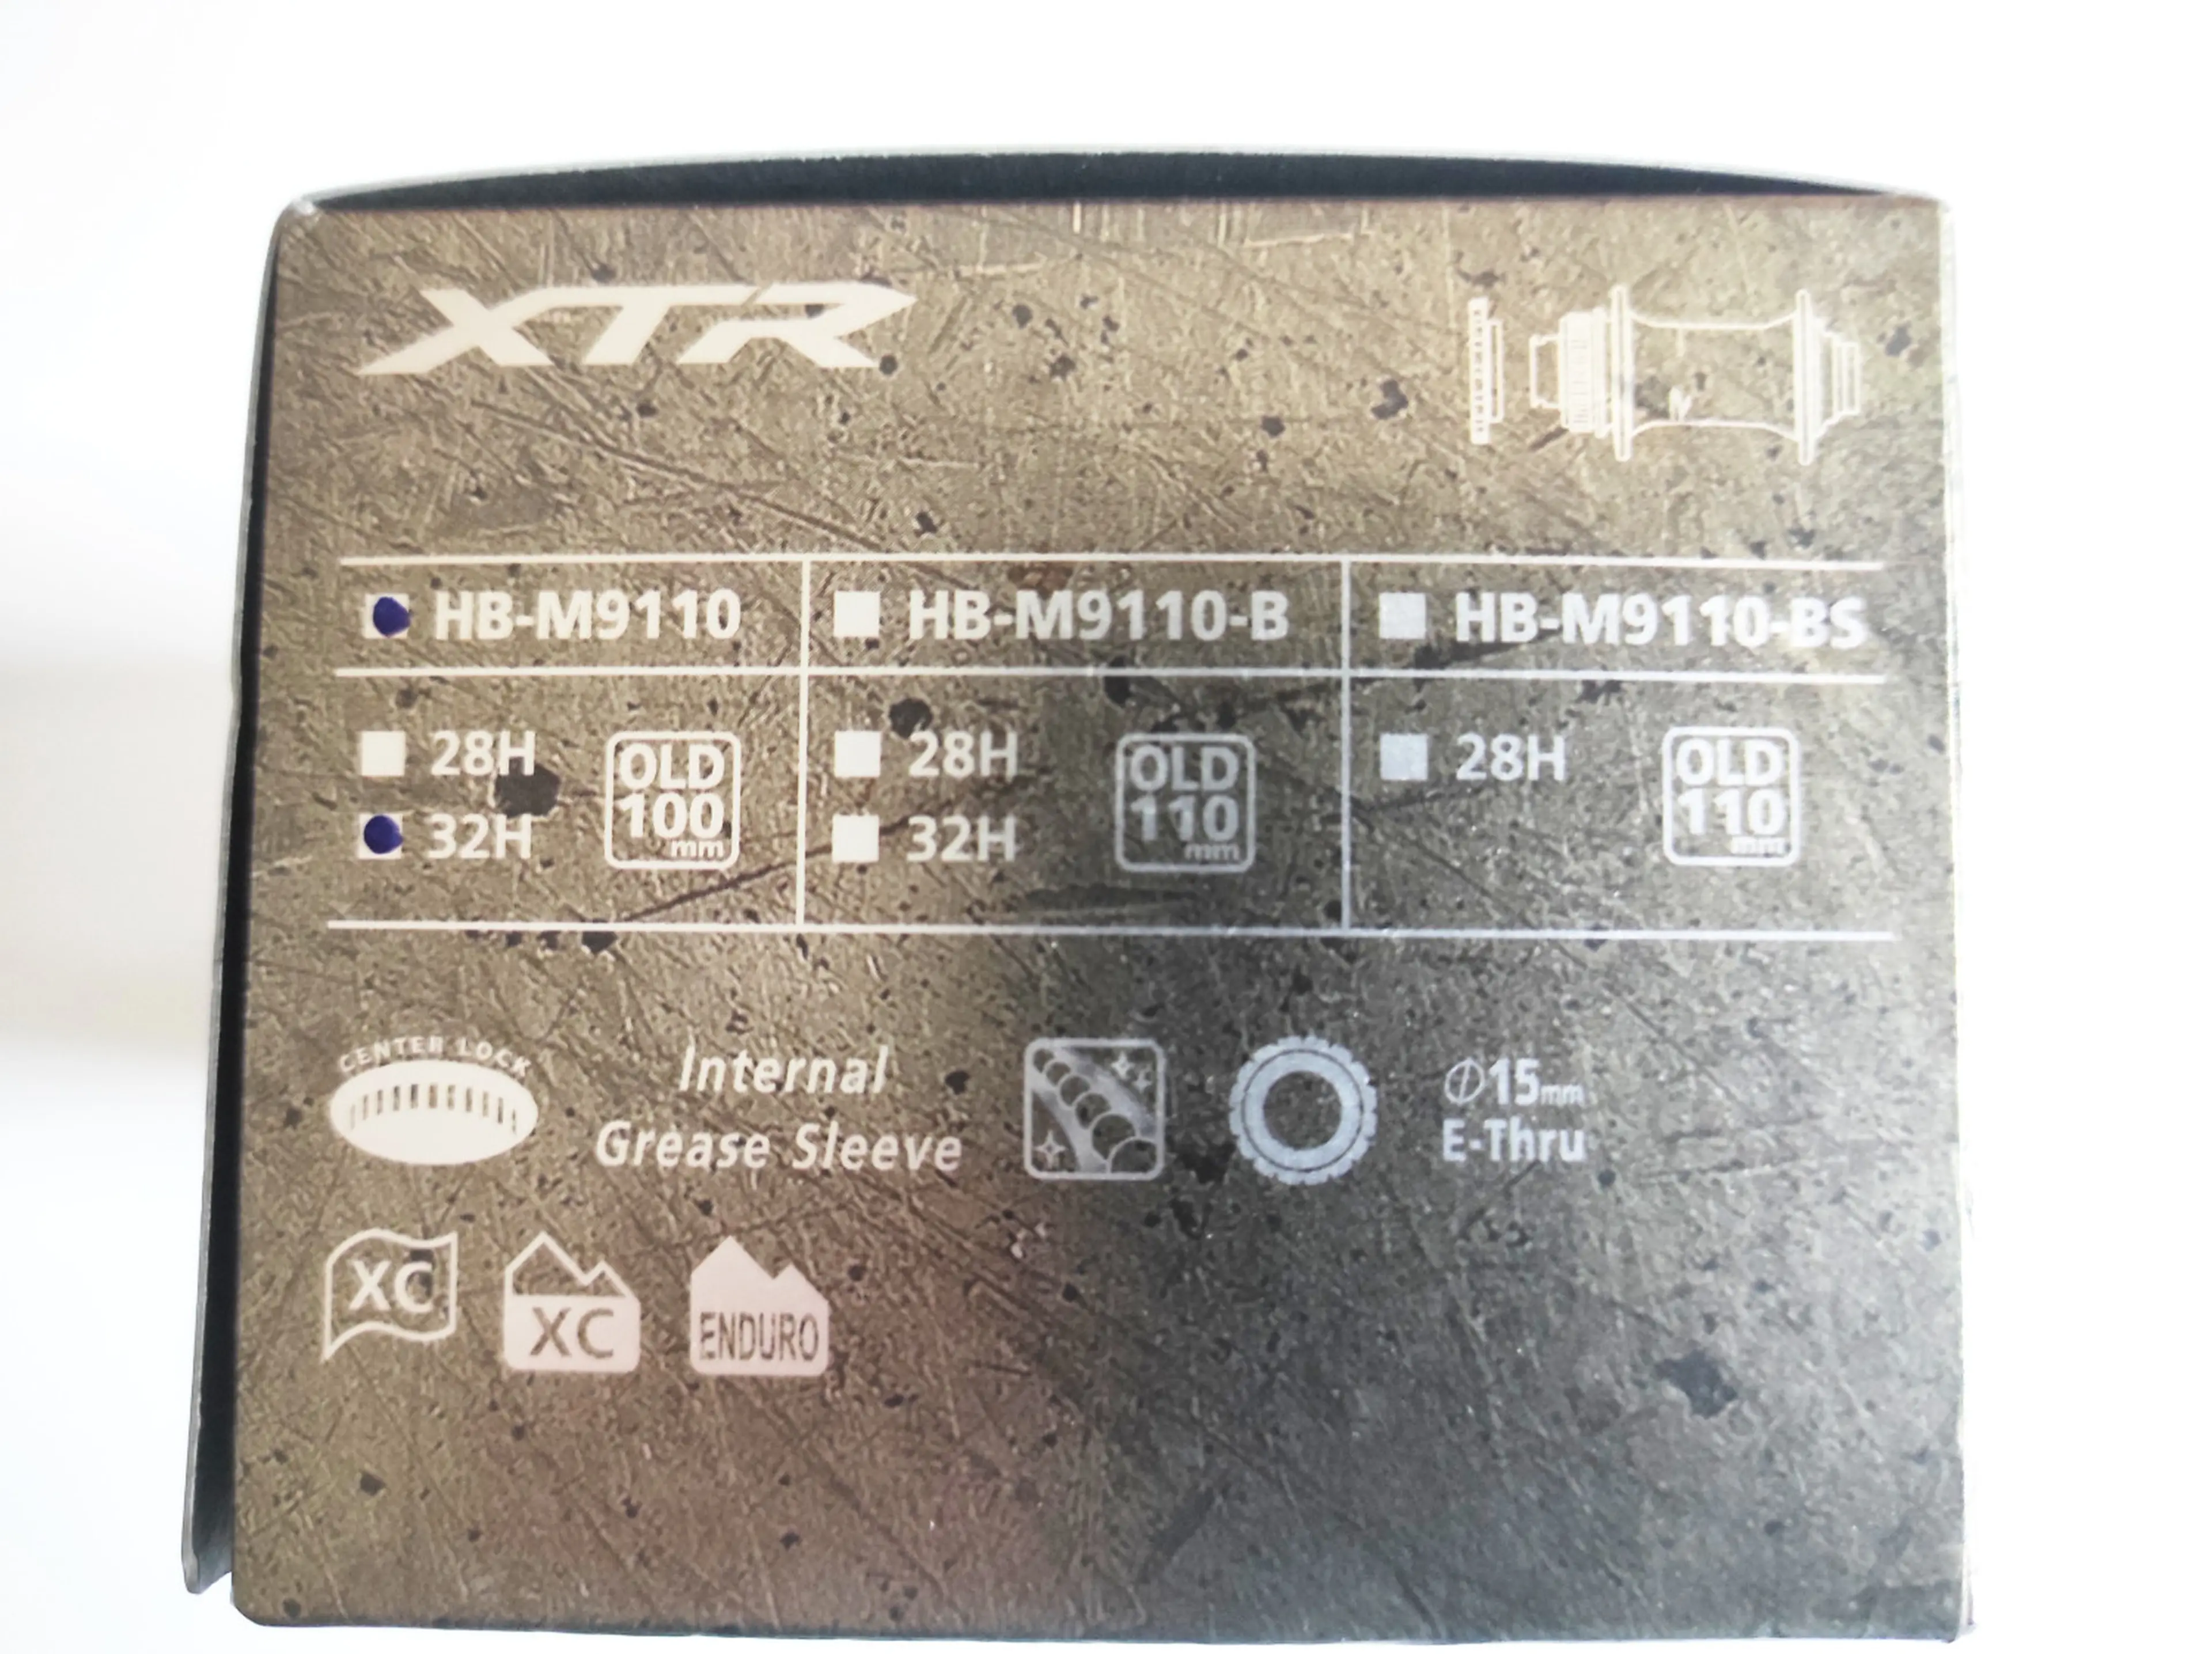 14. Butuc fata Shimano XTR HB-M9110 15x100mm 32h disc centerlock nou